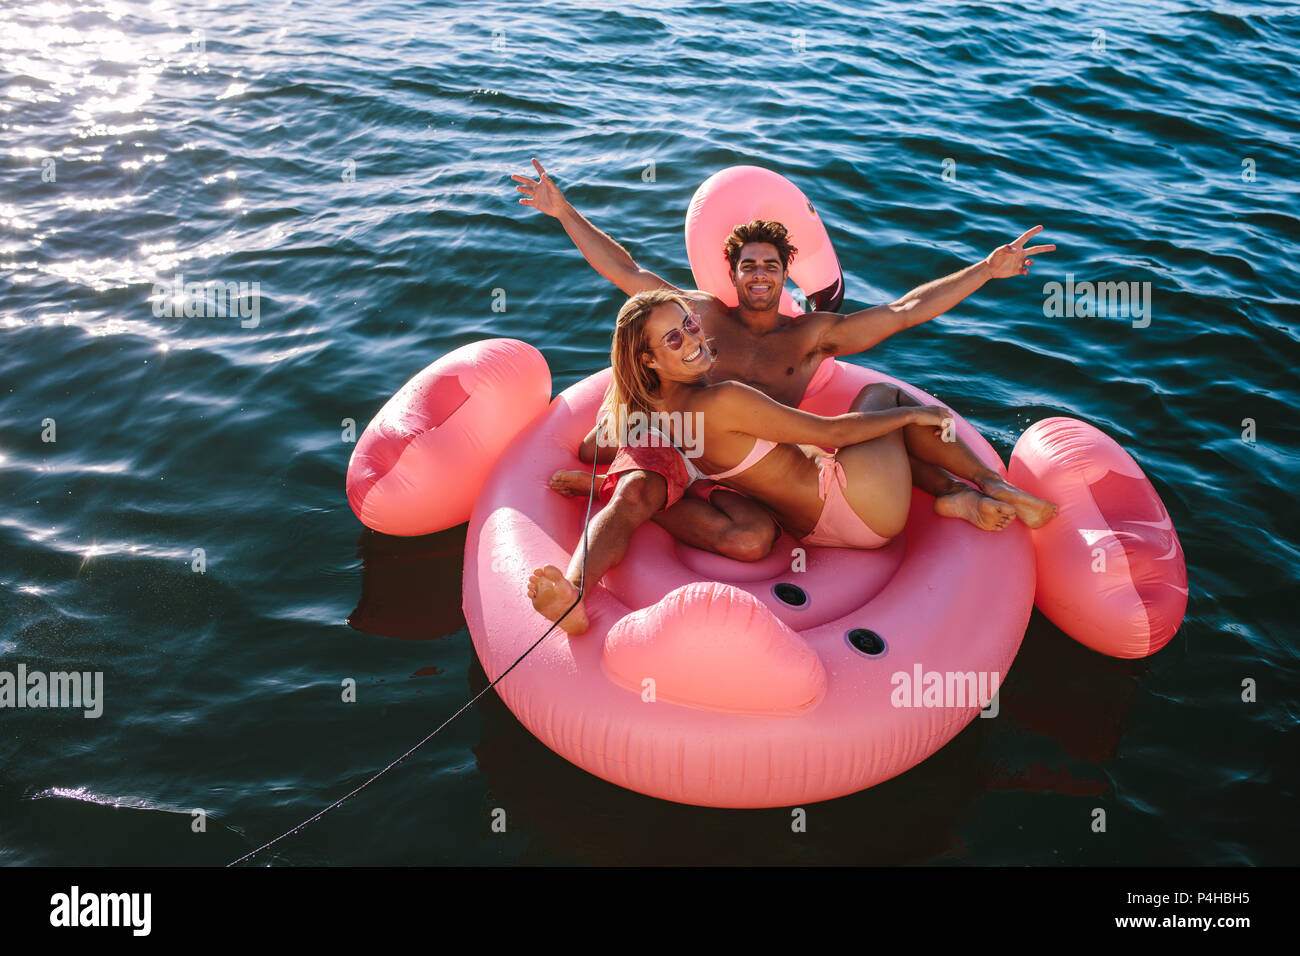 Beau couple enjoying inflatable toy ride derrière un bateau dans la mer. L'homme et la femme assis sur un jouet gonflable lié à un bateau en mer. Banque D'Images